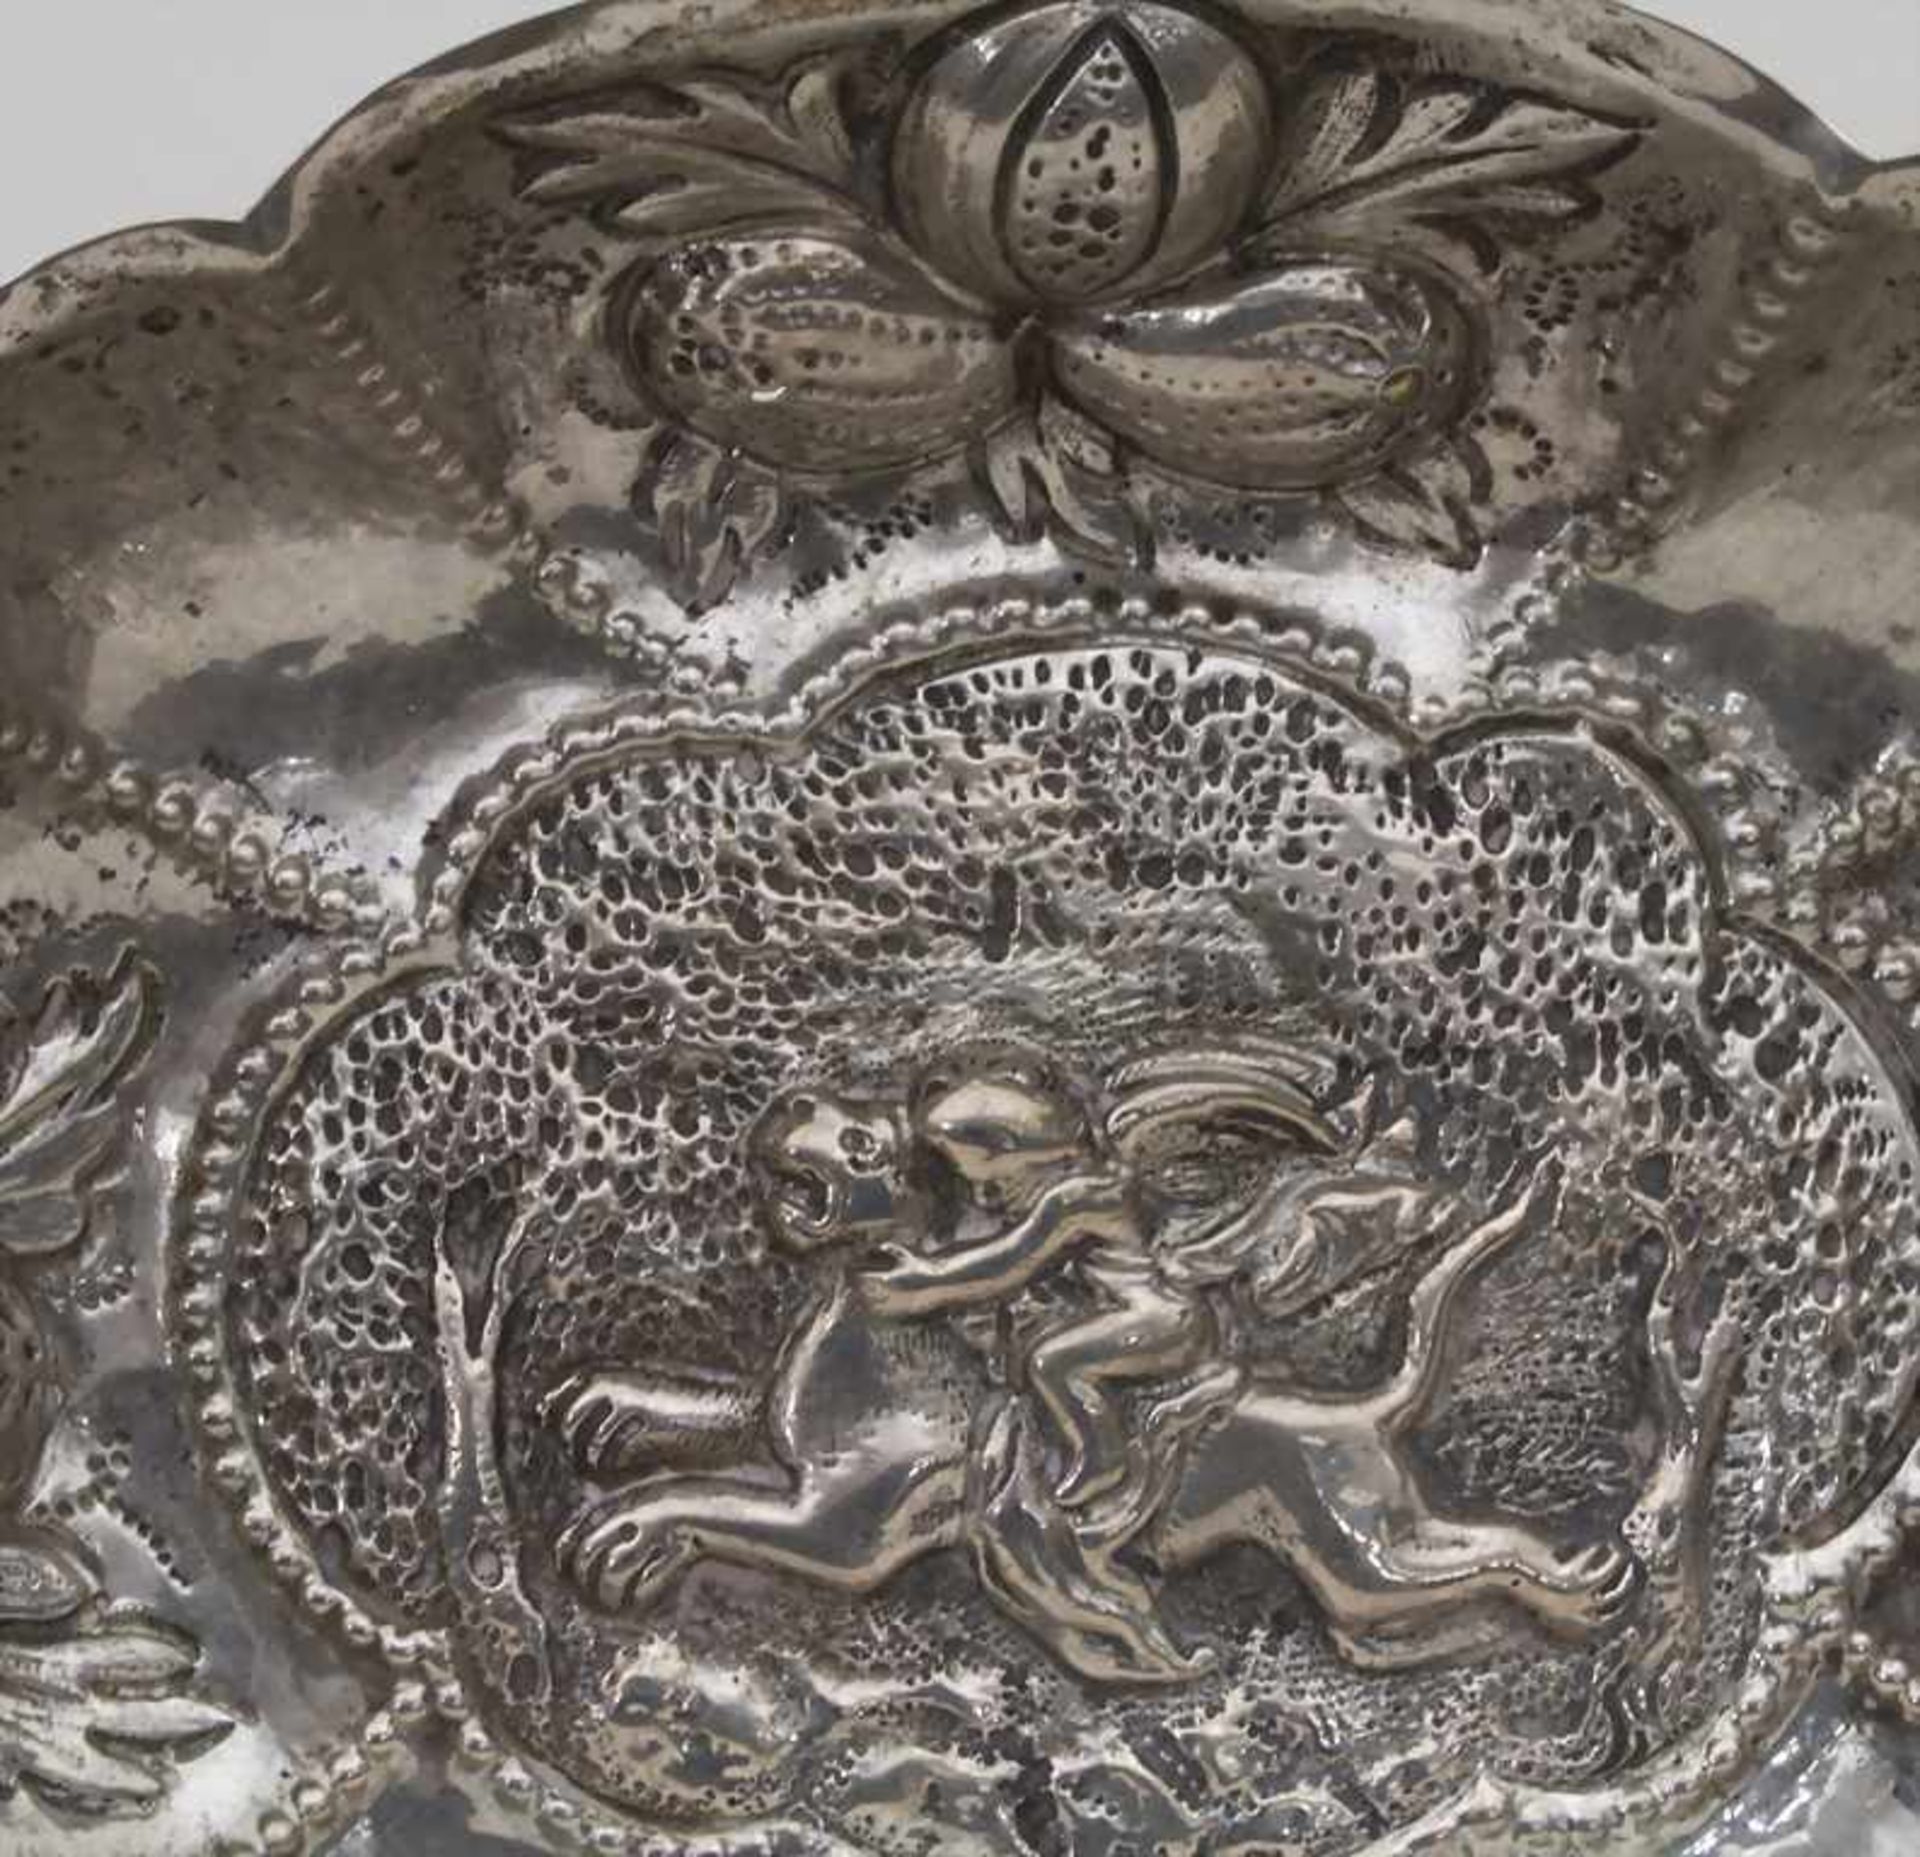 Etrog Schale / An Etrog bowl, Nürnberg, 18. Jh.Material: Silber 13 Lot,Punzierung: Beschaumarke, - Image 3 of 4